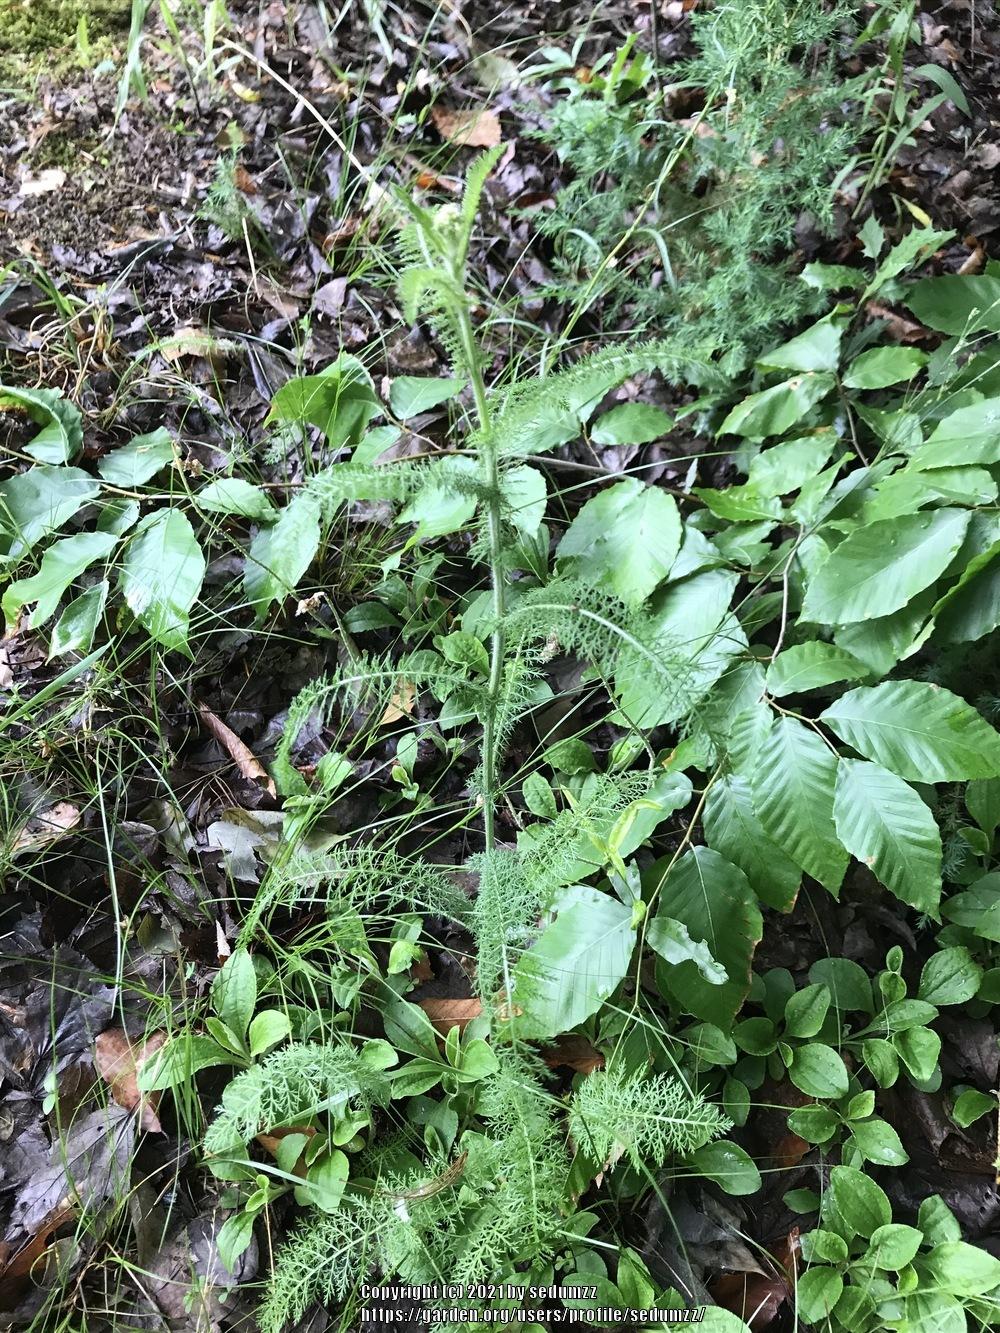 Photo of Yarrow (Achillea millefolium) uploaded by sedumzz